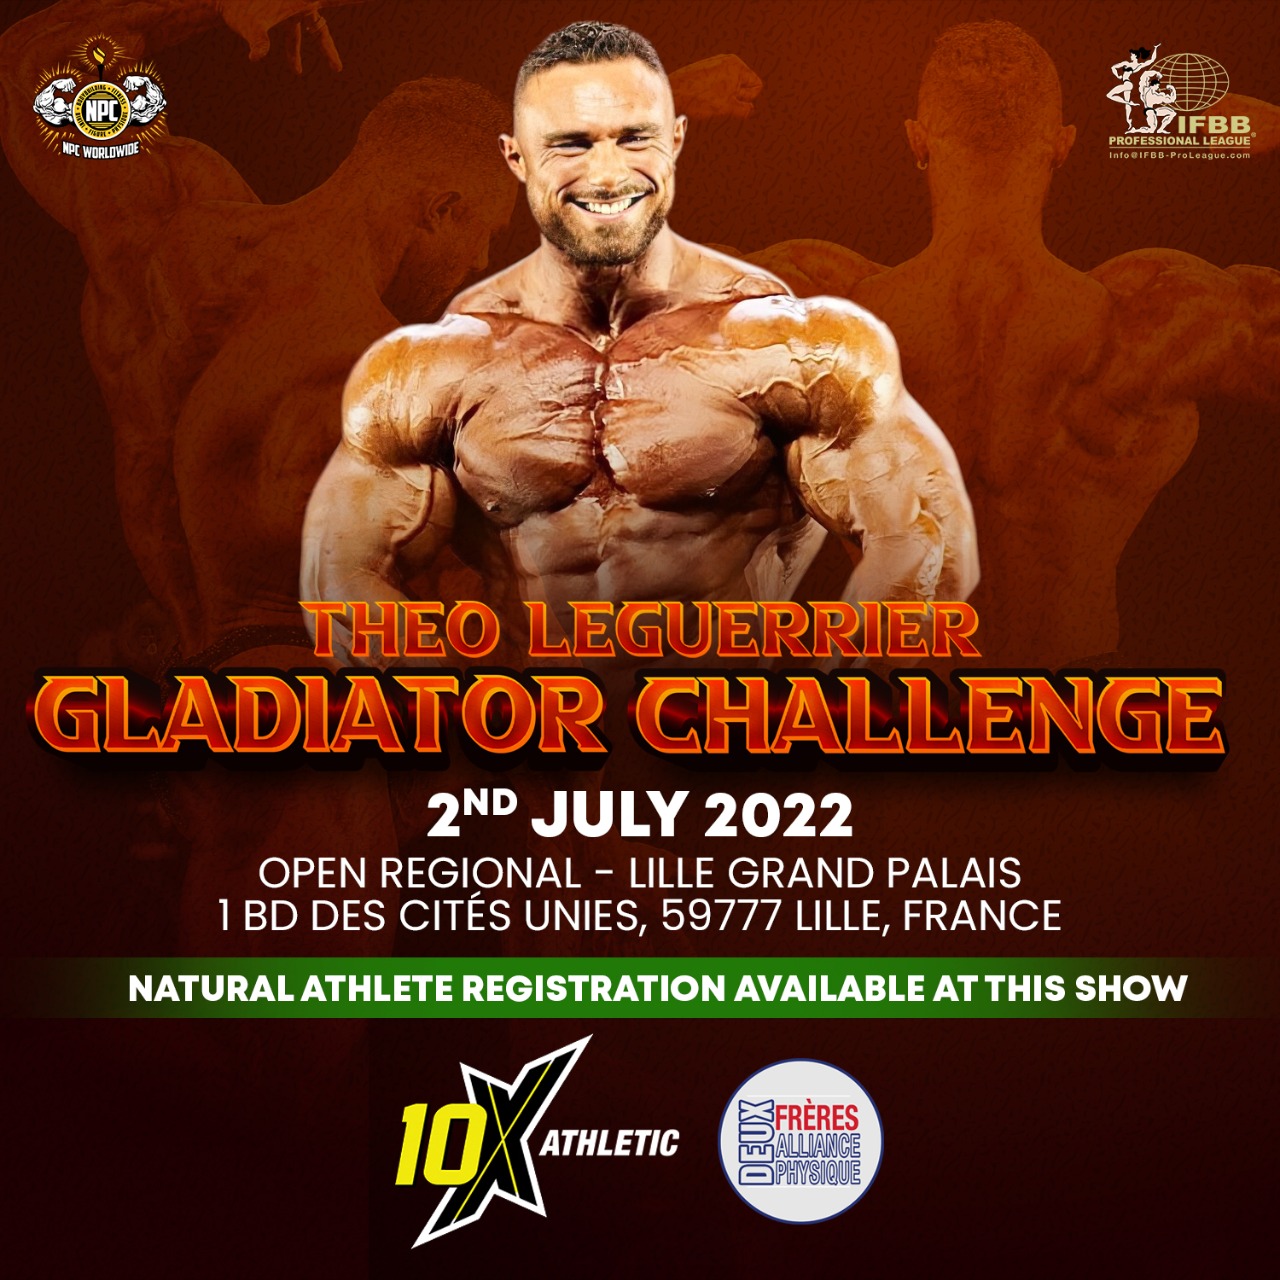 NPC Regional Theo Leguerrier Gladiator Challenge